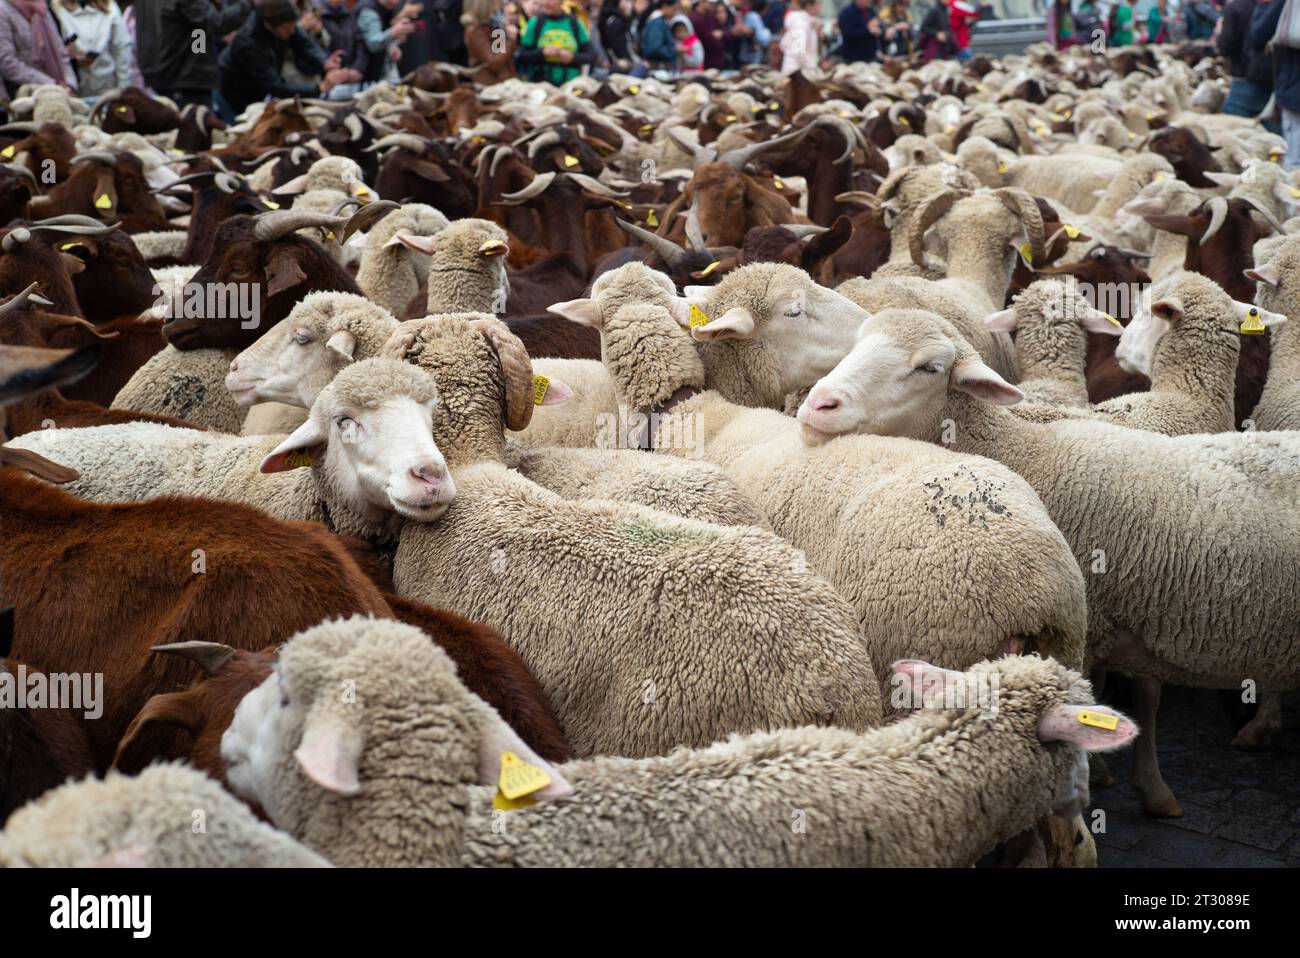 Il gregge di pecore e capre, accompagnato da pastori, passa attraverso le strade del centro di Madrid durante la transumanza, celebrata ogni anno. 2 ottobre Foto Stock